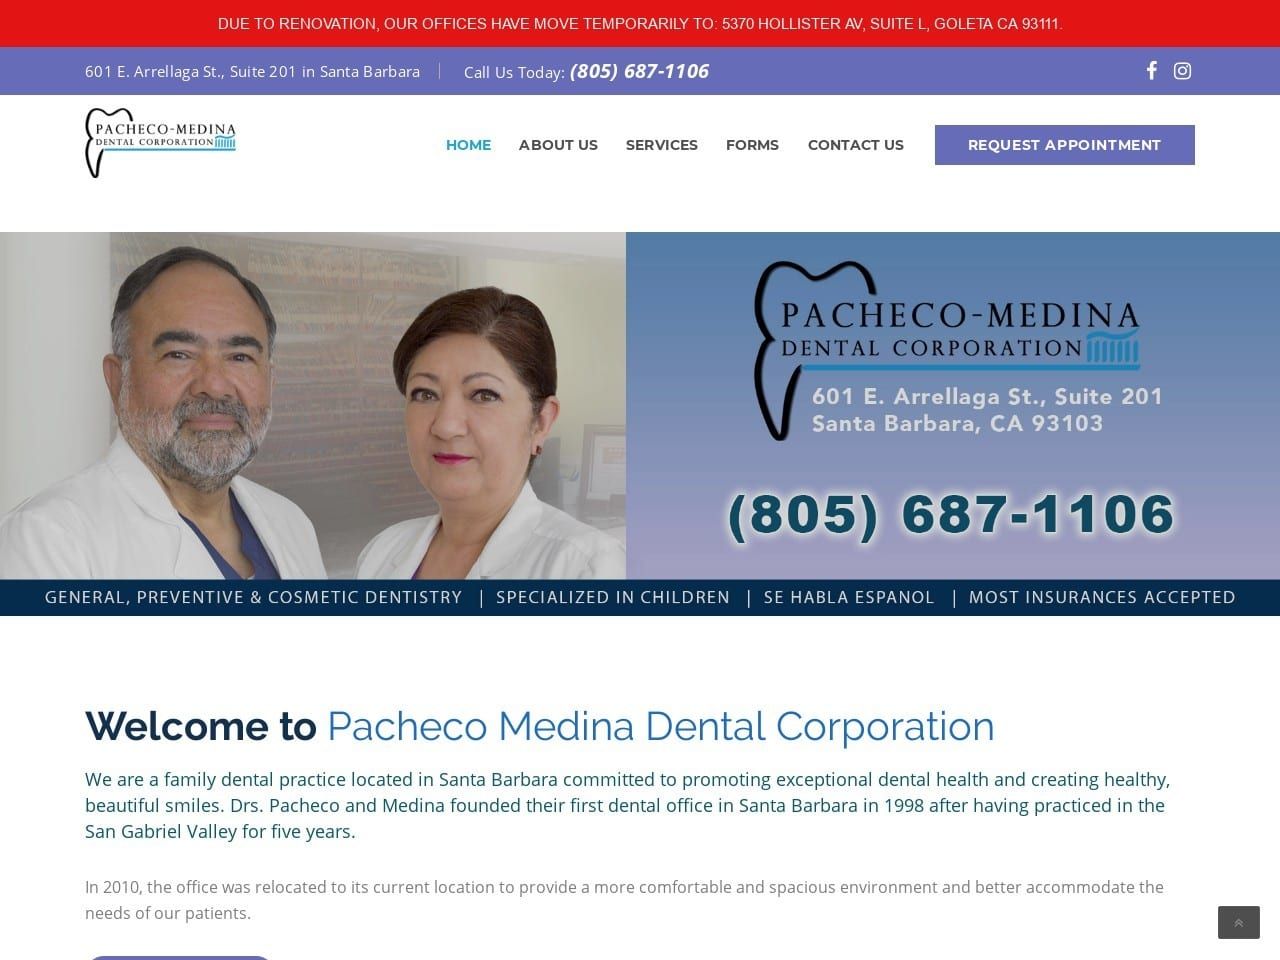 Pacheco Website Screenshot from pachecomedina.com